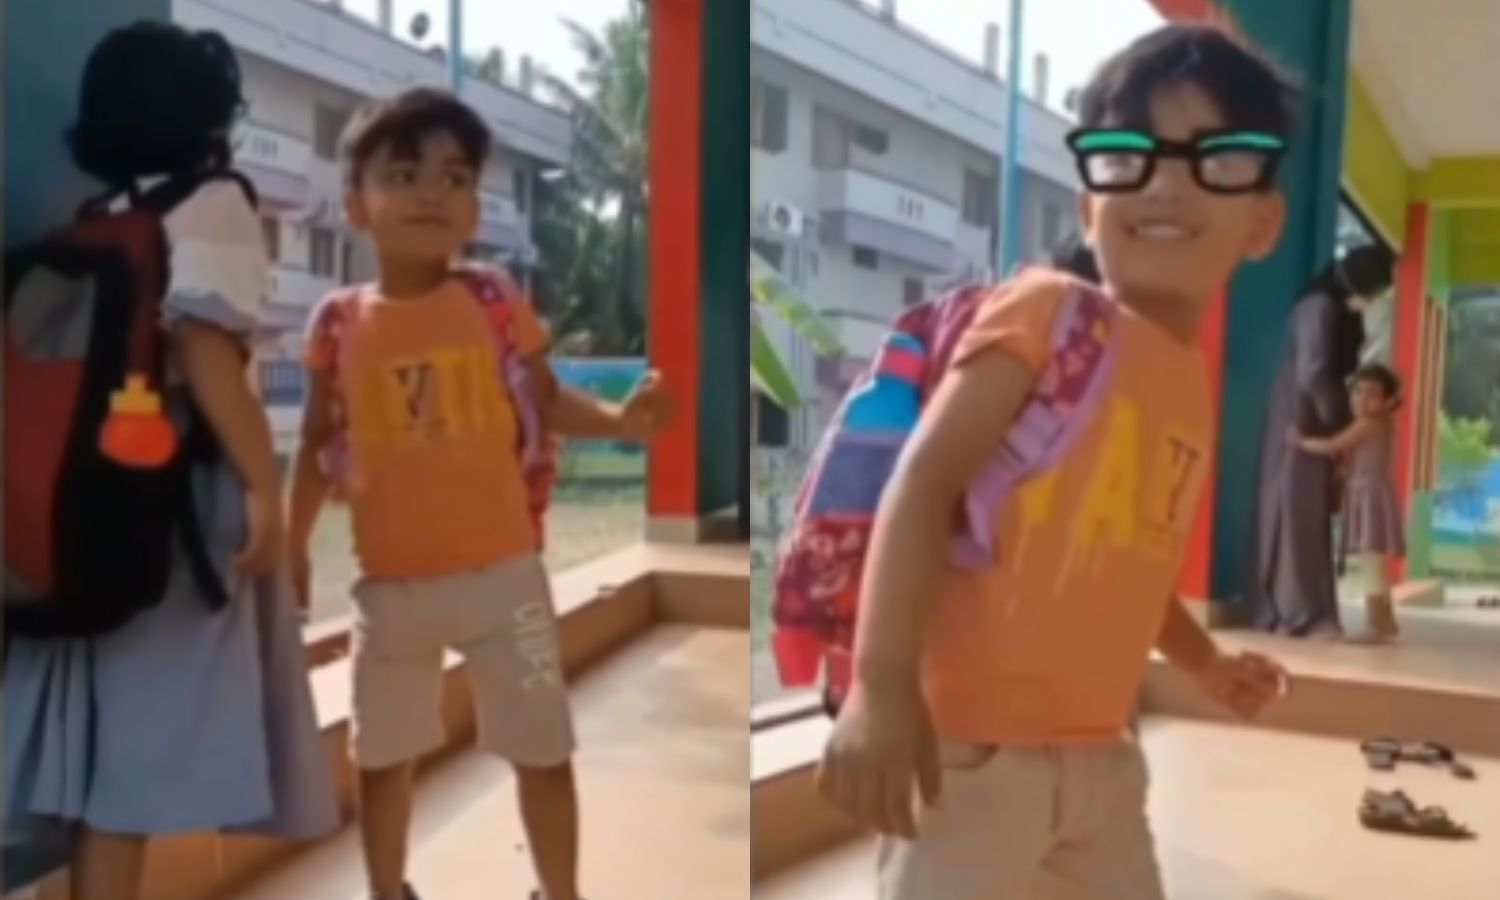 School boy playful gesture melts hearts viral video